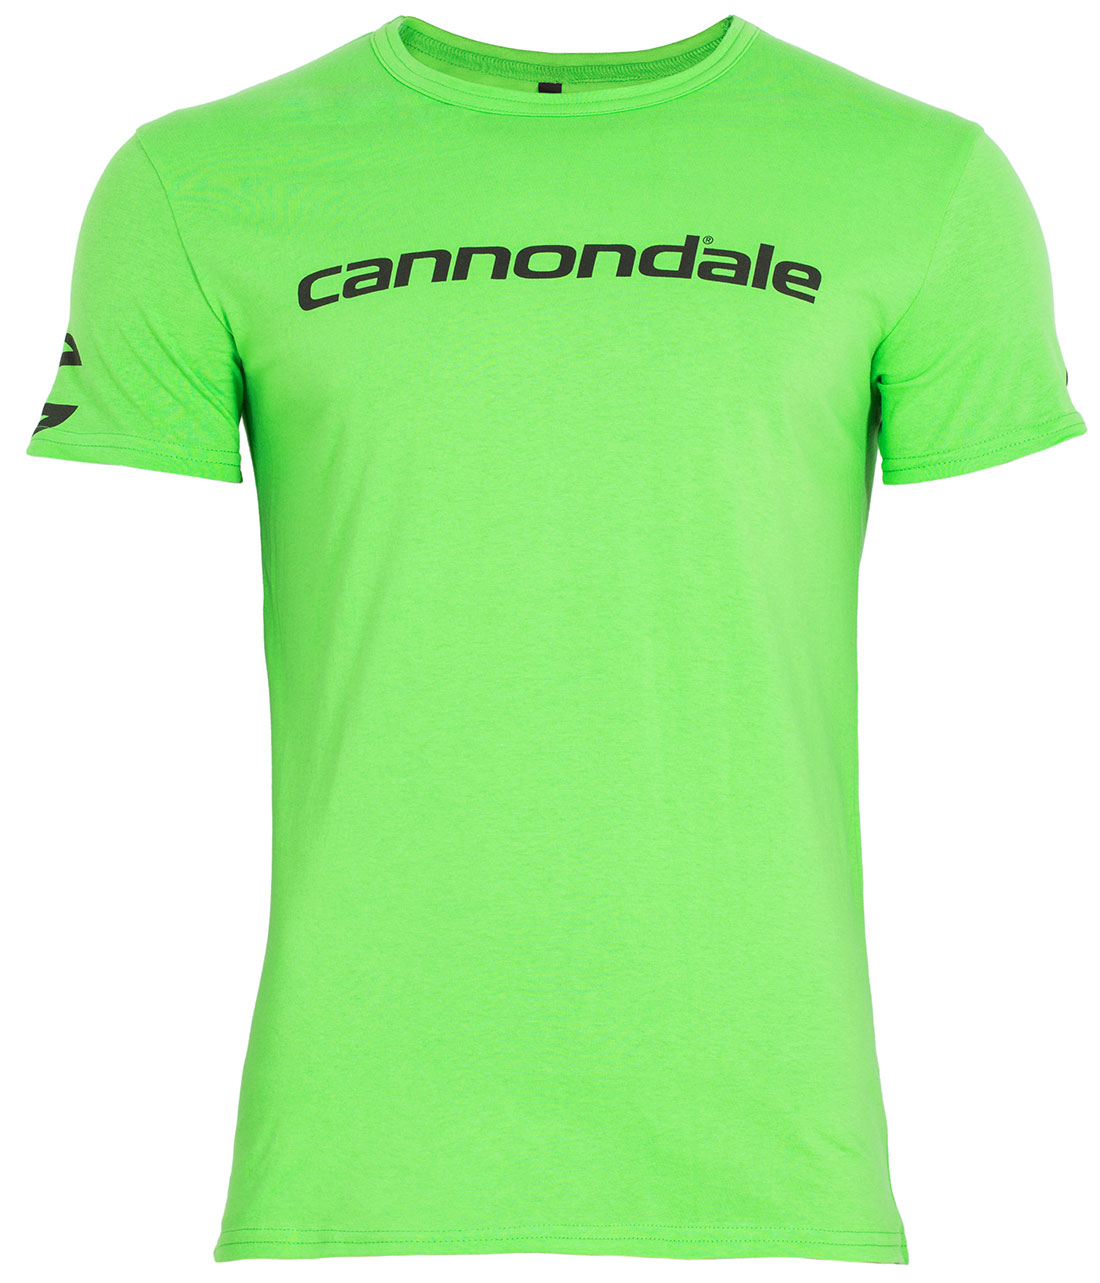 Футболка Cannondale с черным горизонтальным логотипом, зелёная, размер S